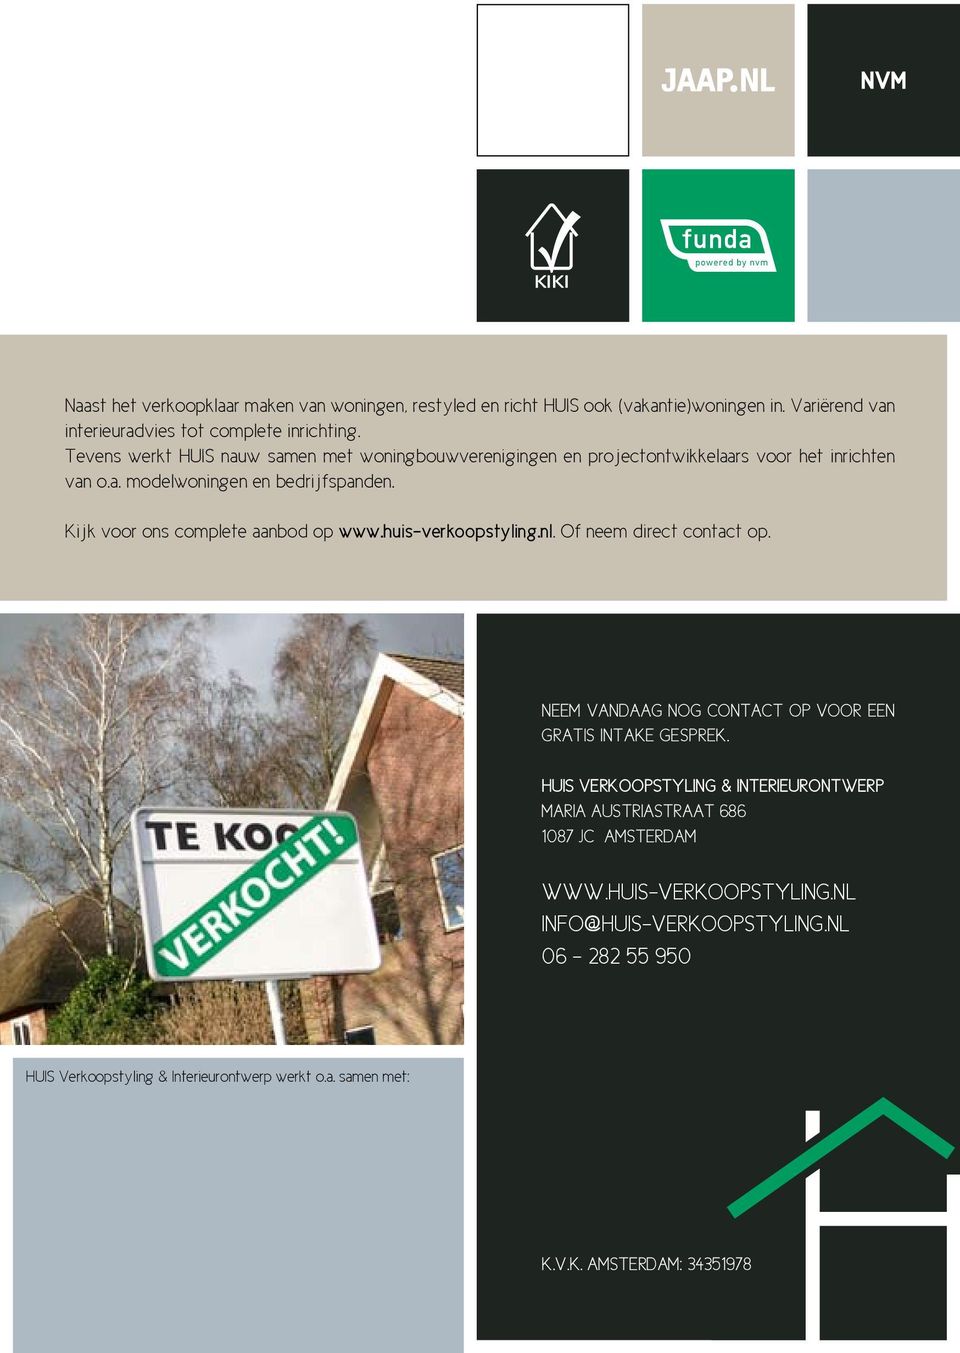 Kijk voor ons complete aanbod op www.huis-verkoopstyling.nl. Of neem direct contact op. Neem vandaag nog contact op voor een gratis intake gesprek.